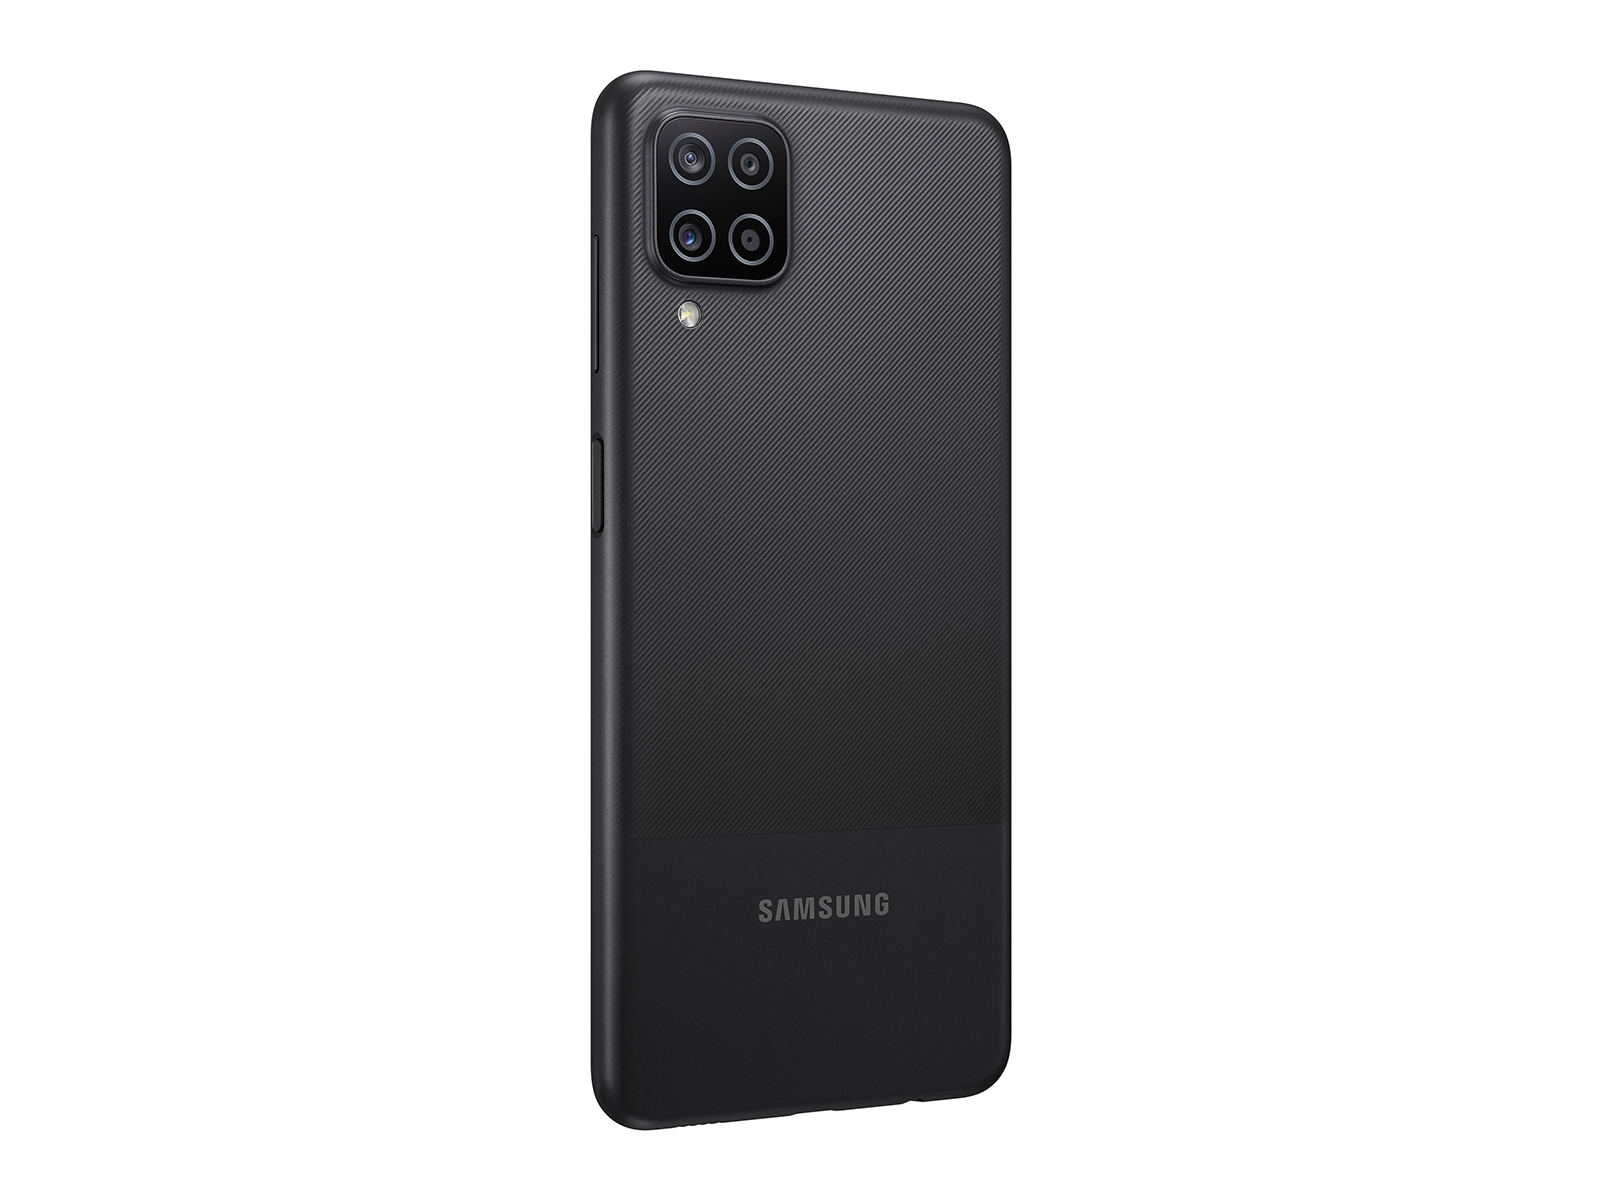 Galaxy A12 T Mobile Phones - SM-A125UZKATMB